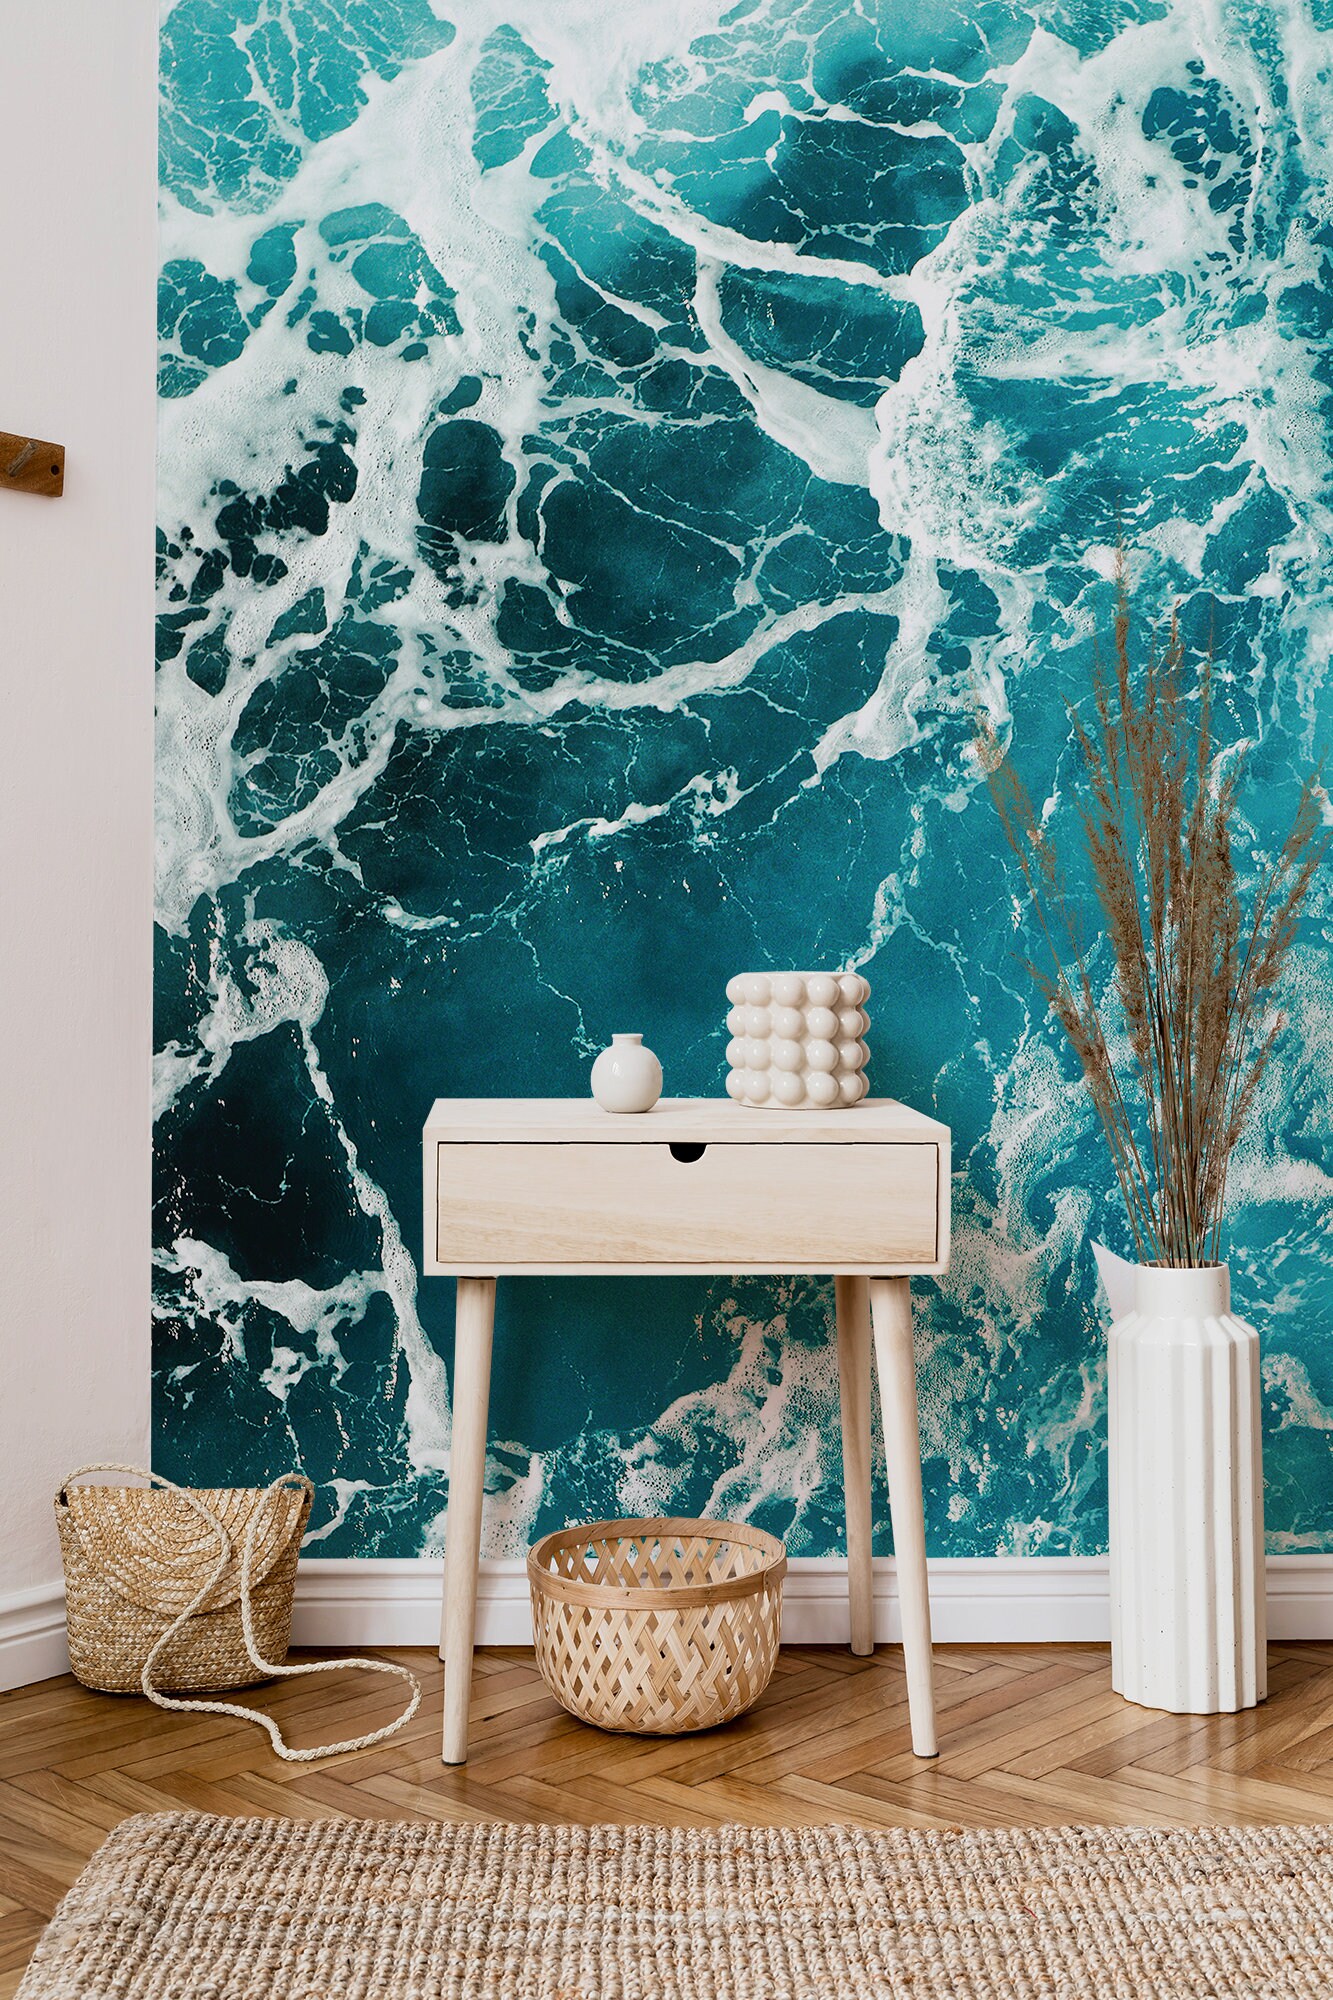 Papel pintado inspirado en las olas del mar en tonos azules